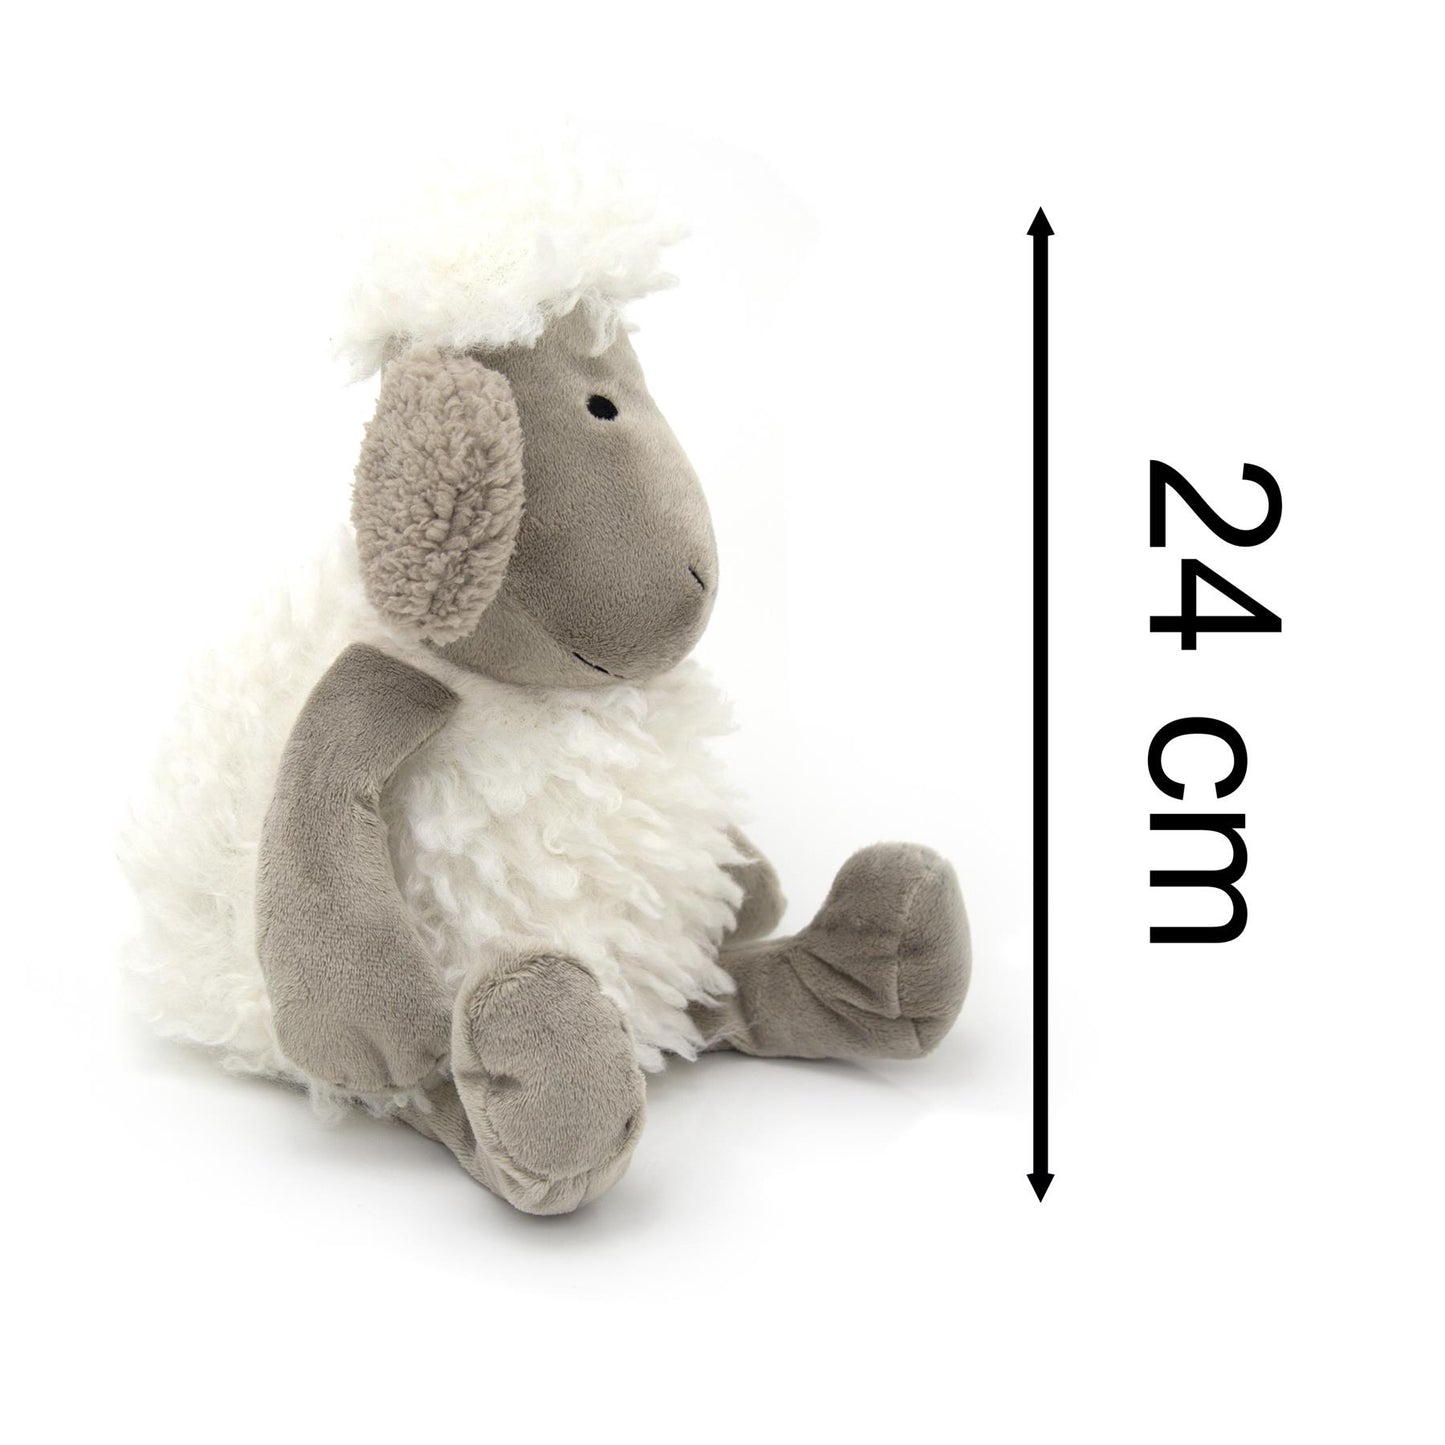 Cute Woolly Sheep Fabric Doorstop | Decorative Animal Door Stop - Grey Ears